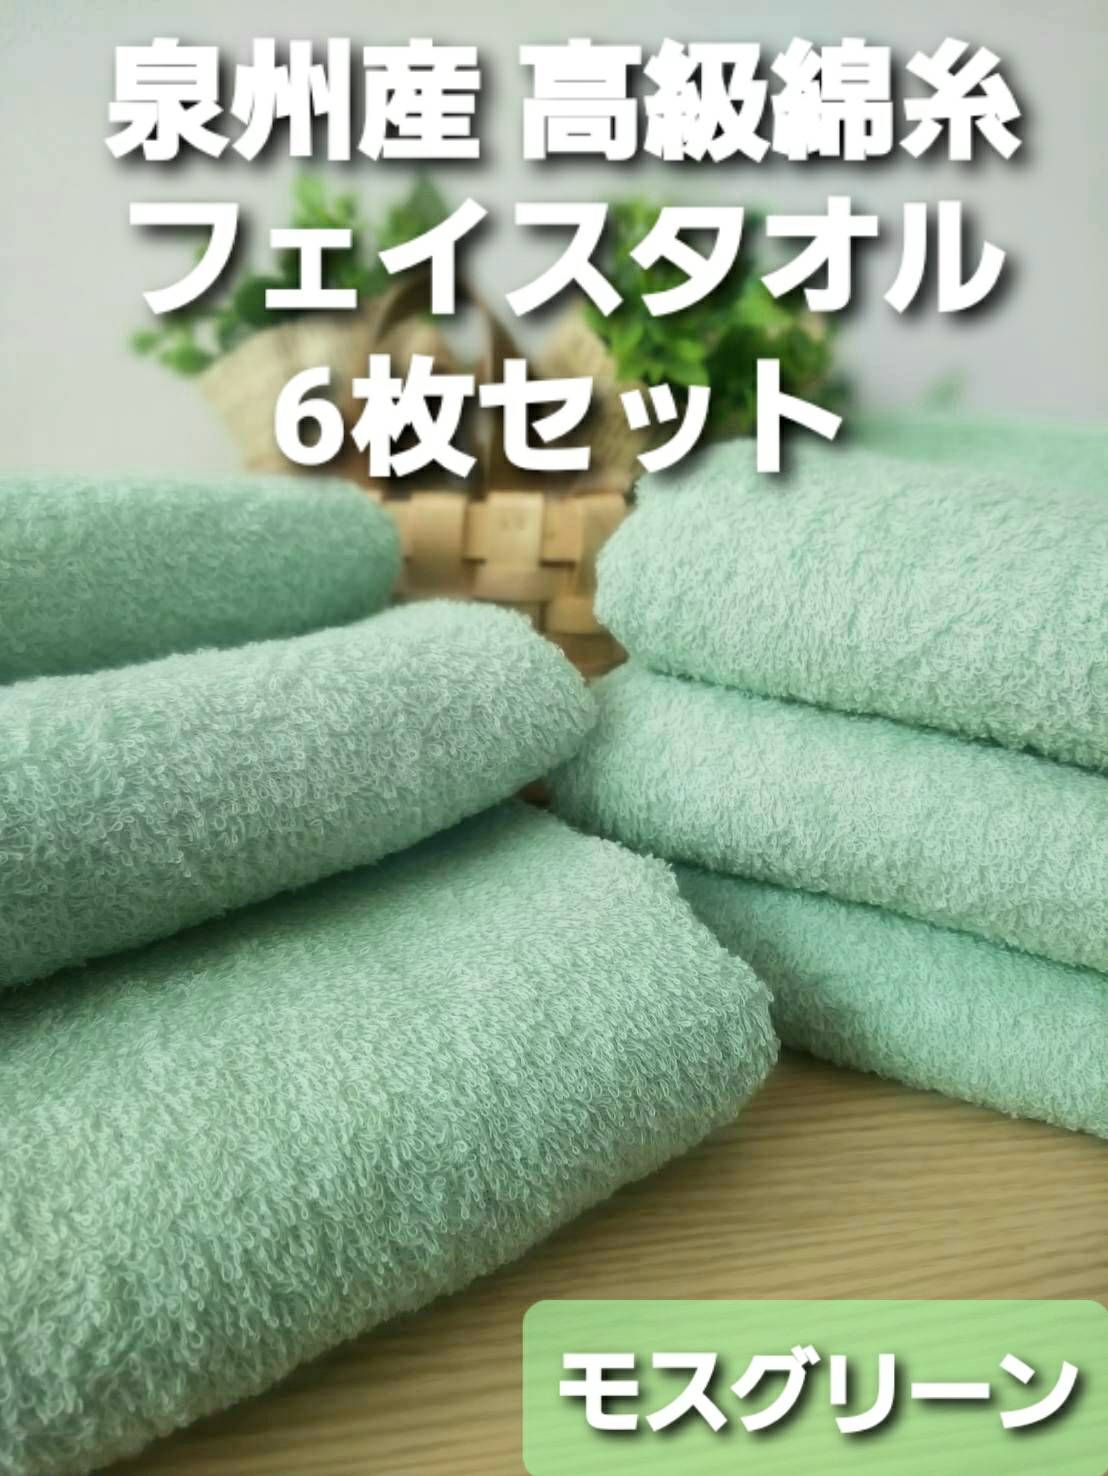 泉州タオル 高級綿糸モスグリーンフェイスタオルセット12枚組 タオル新品 まとめ